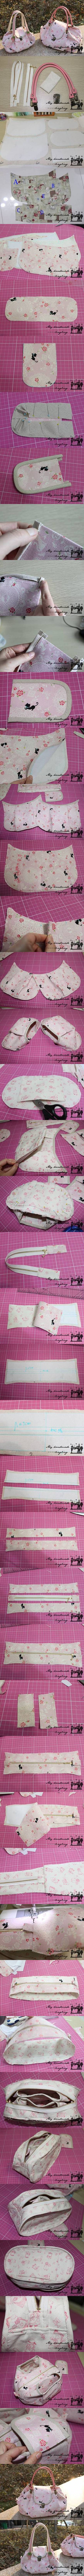 DIY Elegant Fabric Handbag